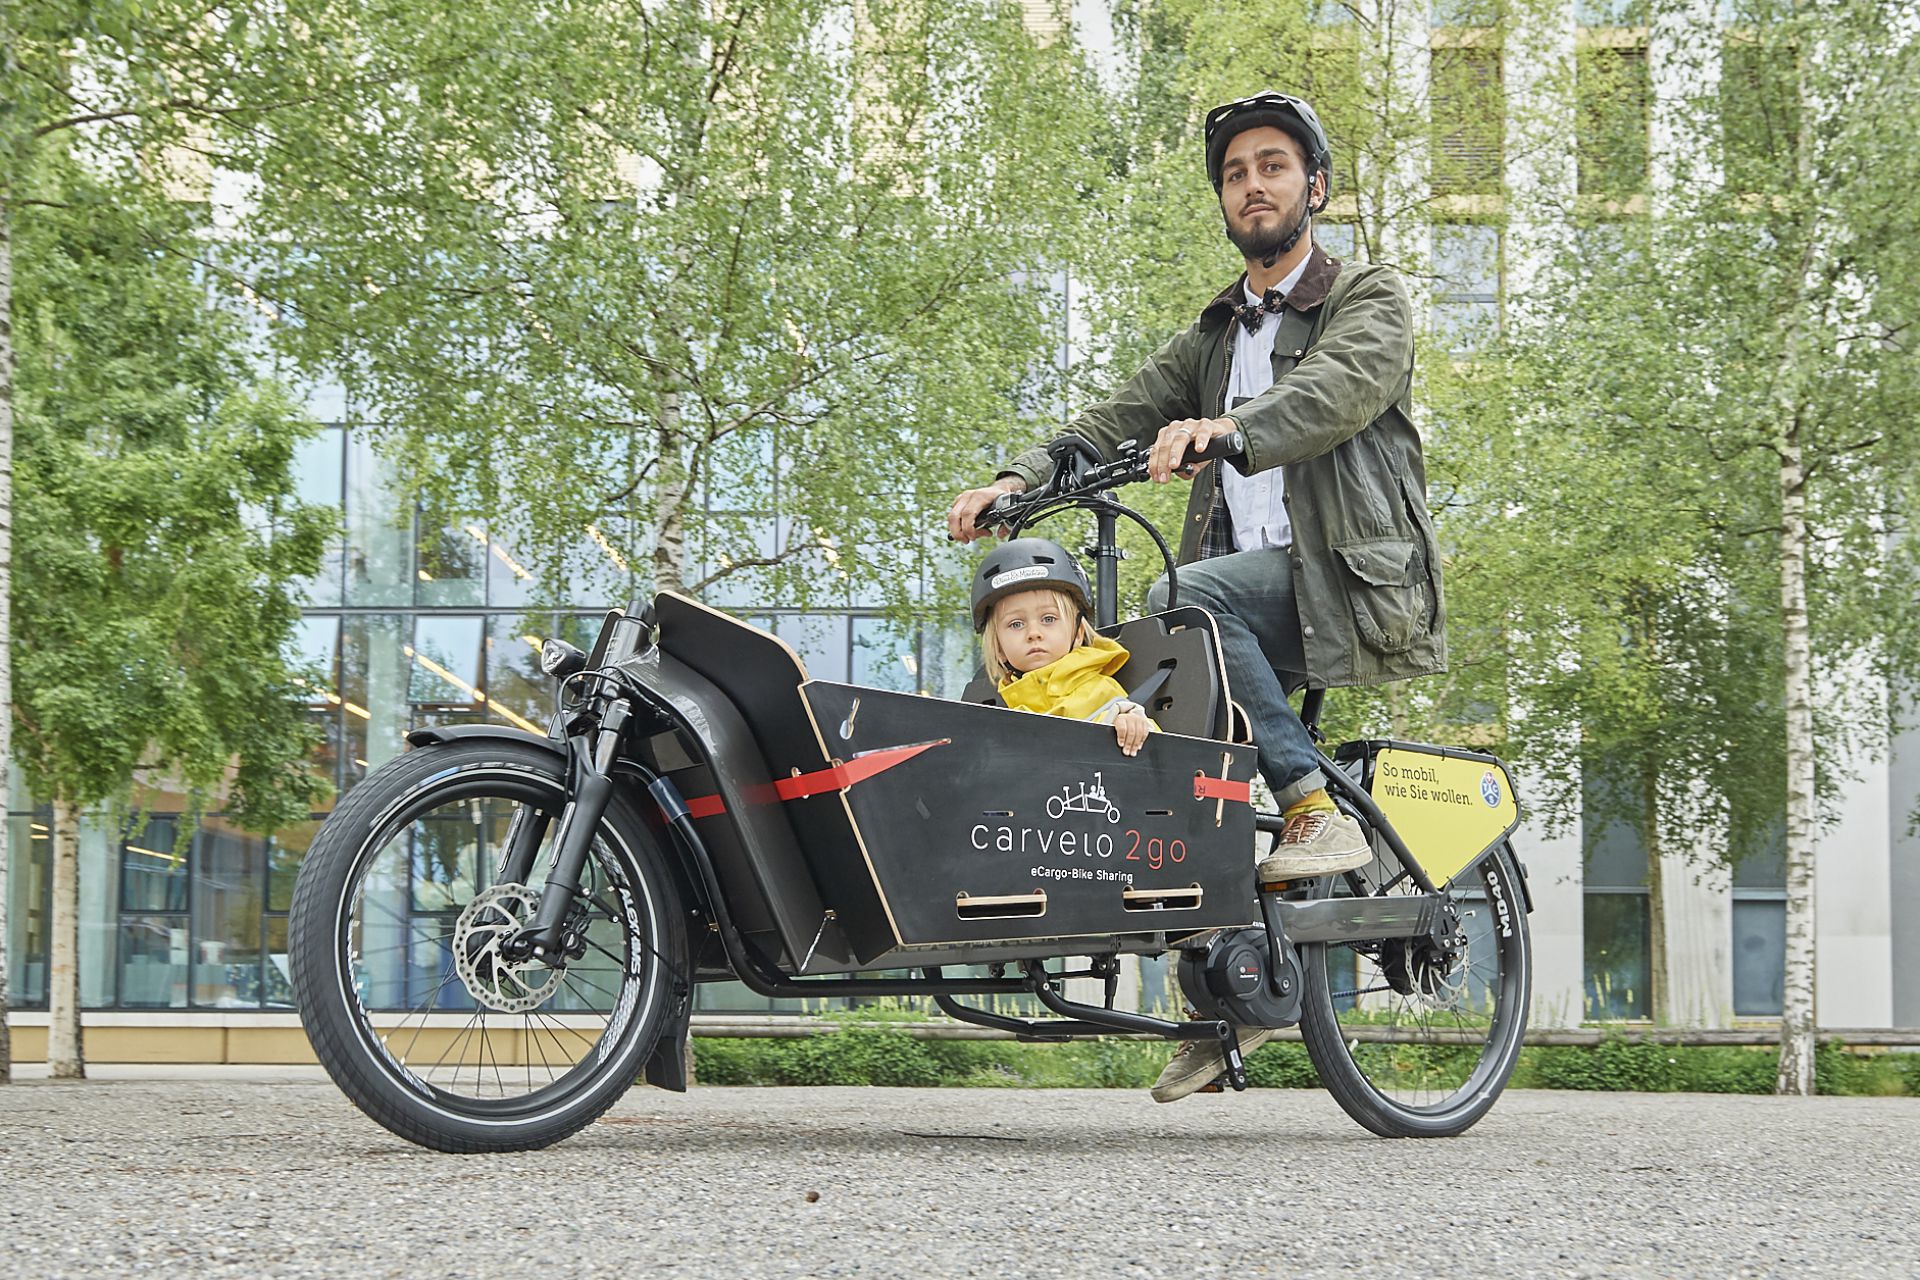 carvelo2go - jetzt ein elektrisches Cargo-Bike nutzen!